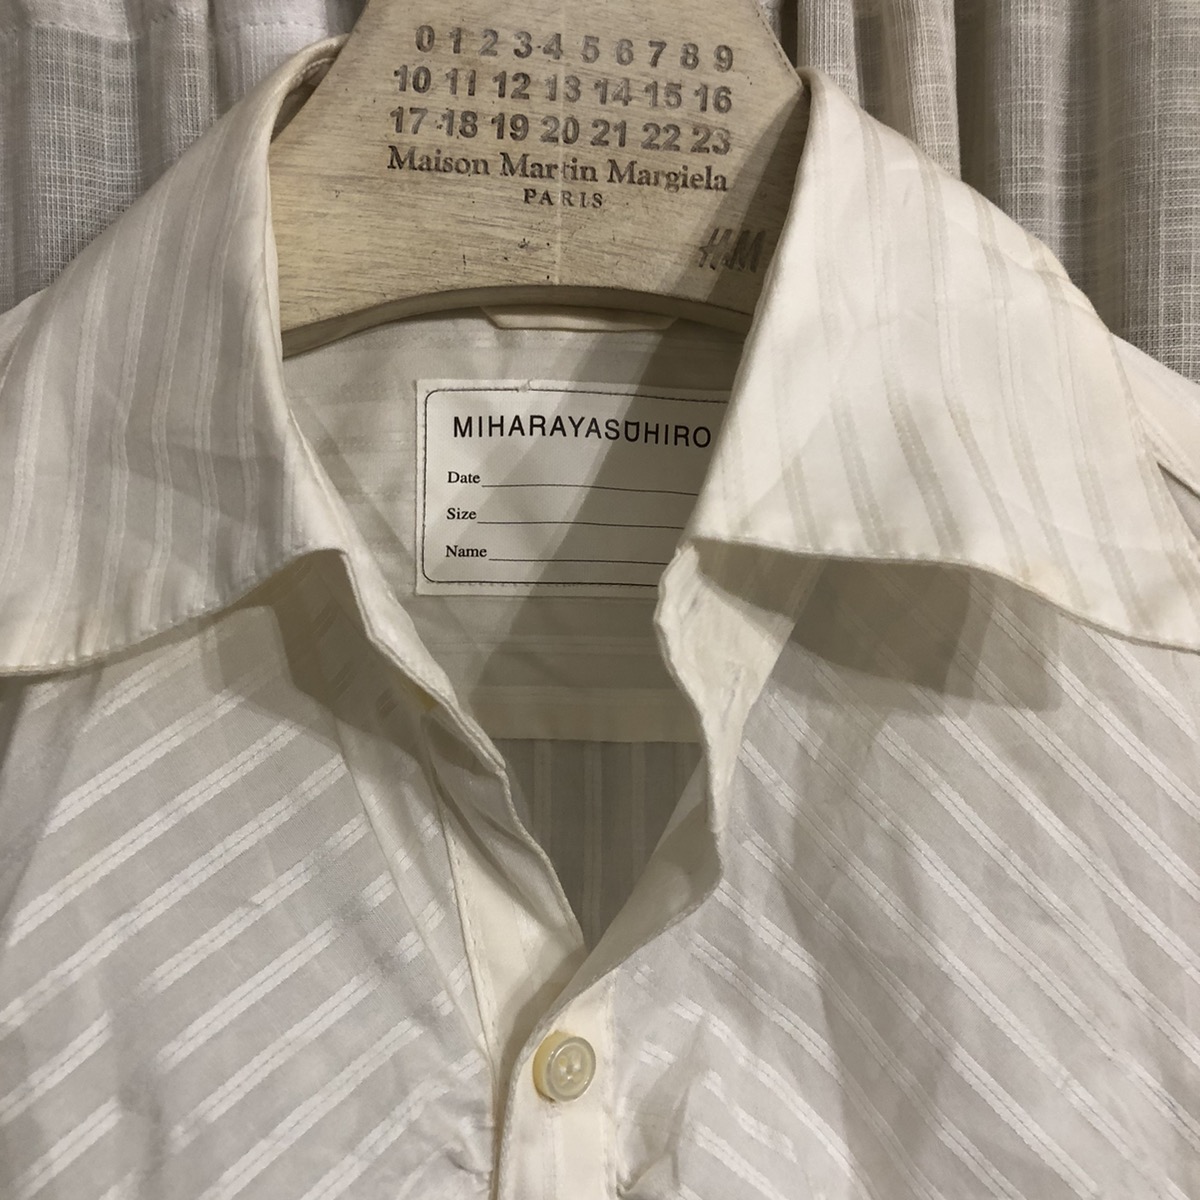 Miharayasuhiro sleeveless shirt - 4